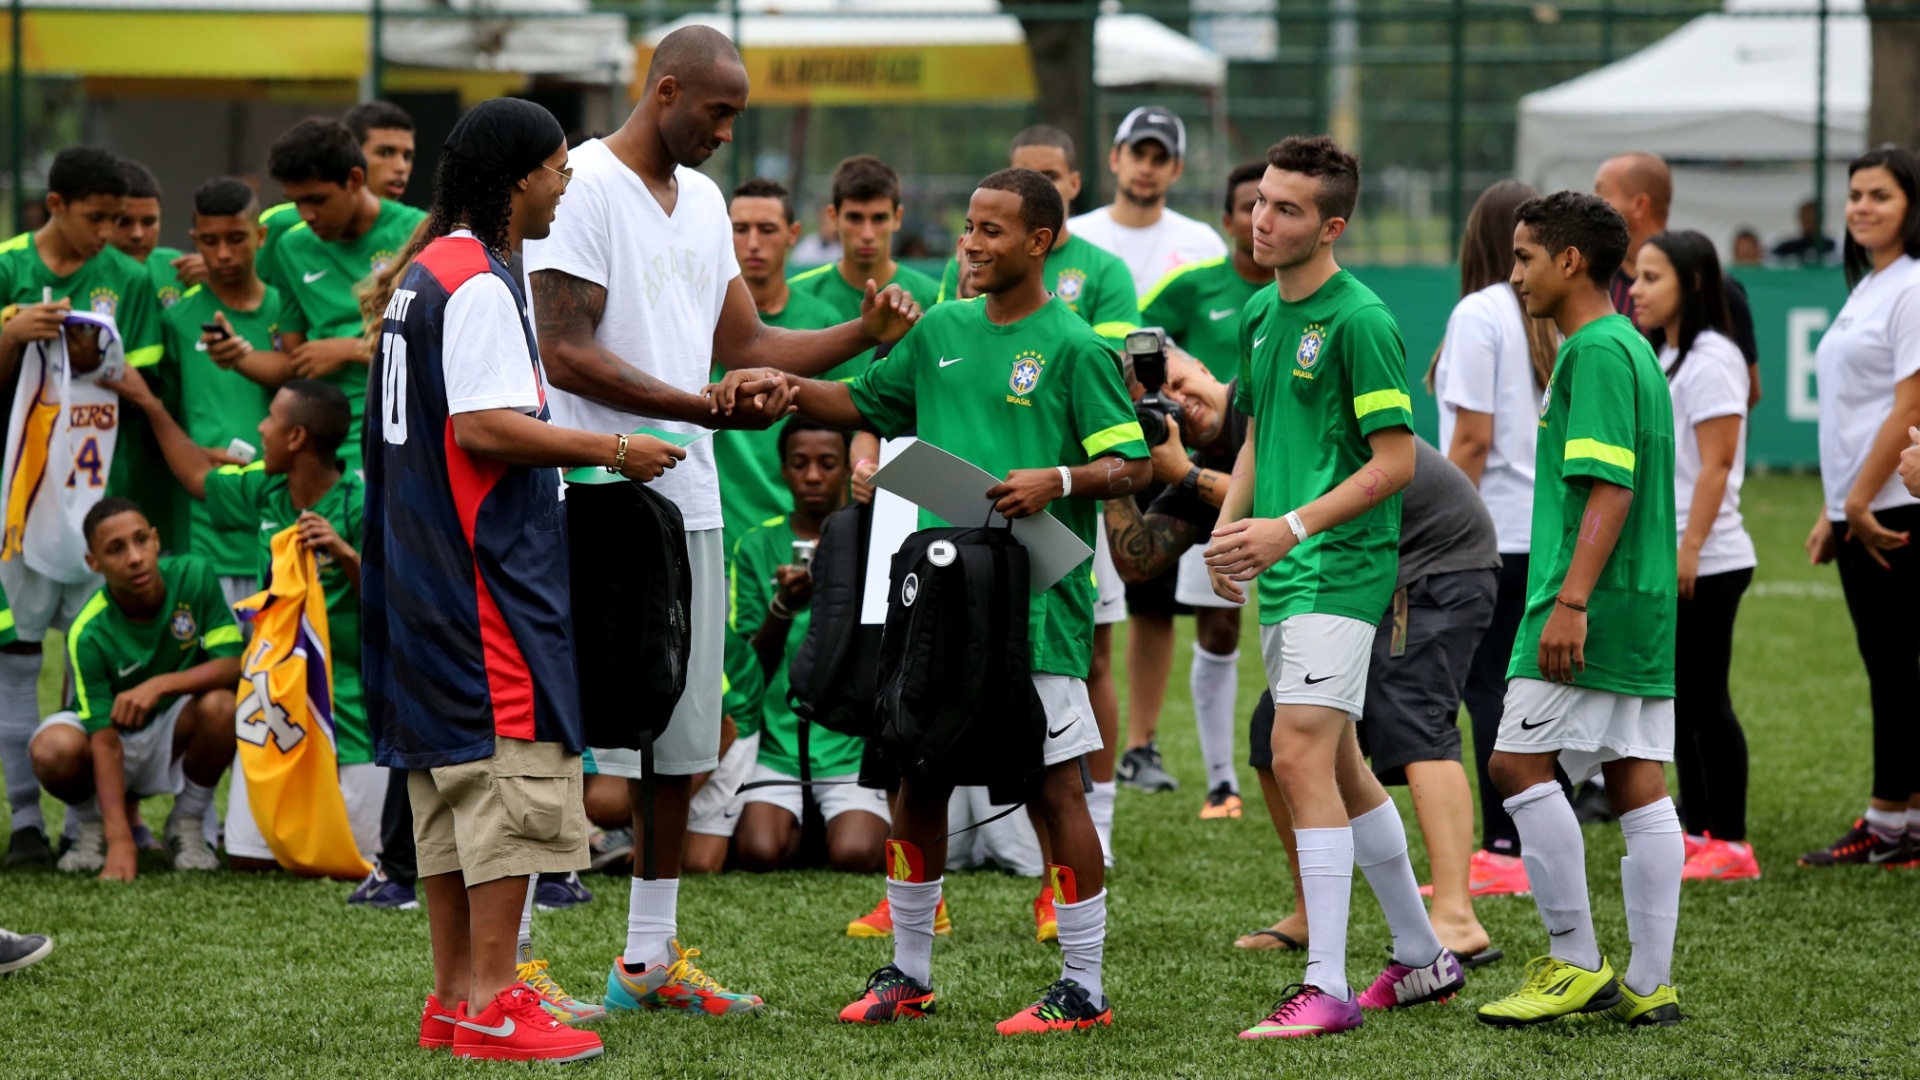 23.jun.2013 - Kobe e Ronaldinho participam de evento no Aterro do Flamengo, no Rio de Janeiro